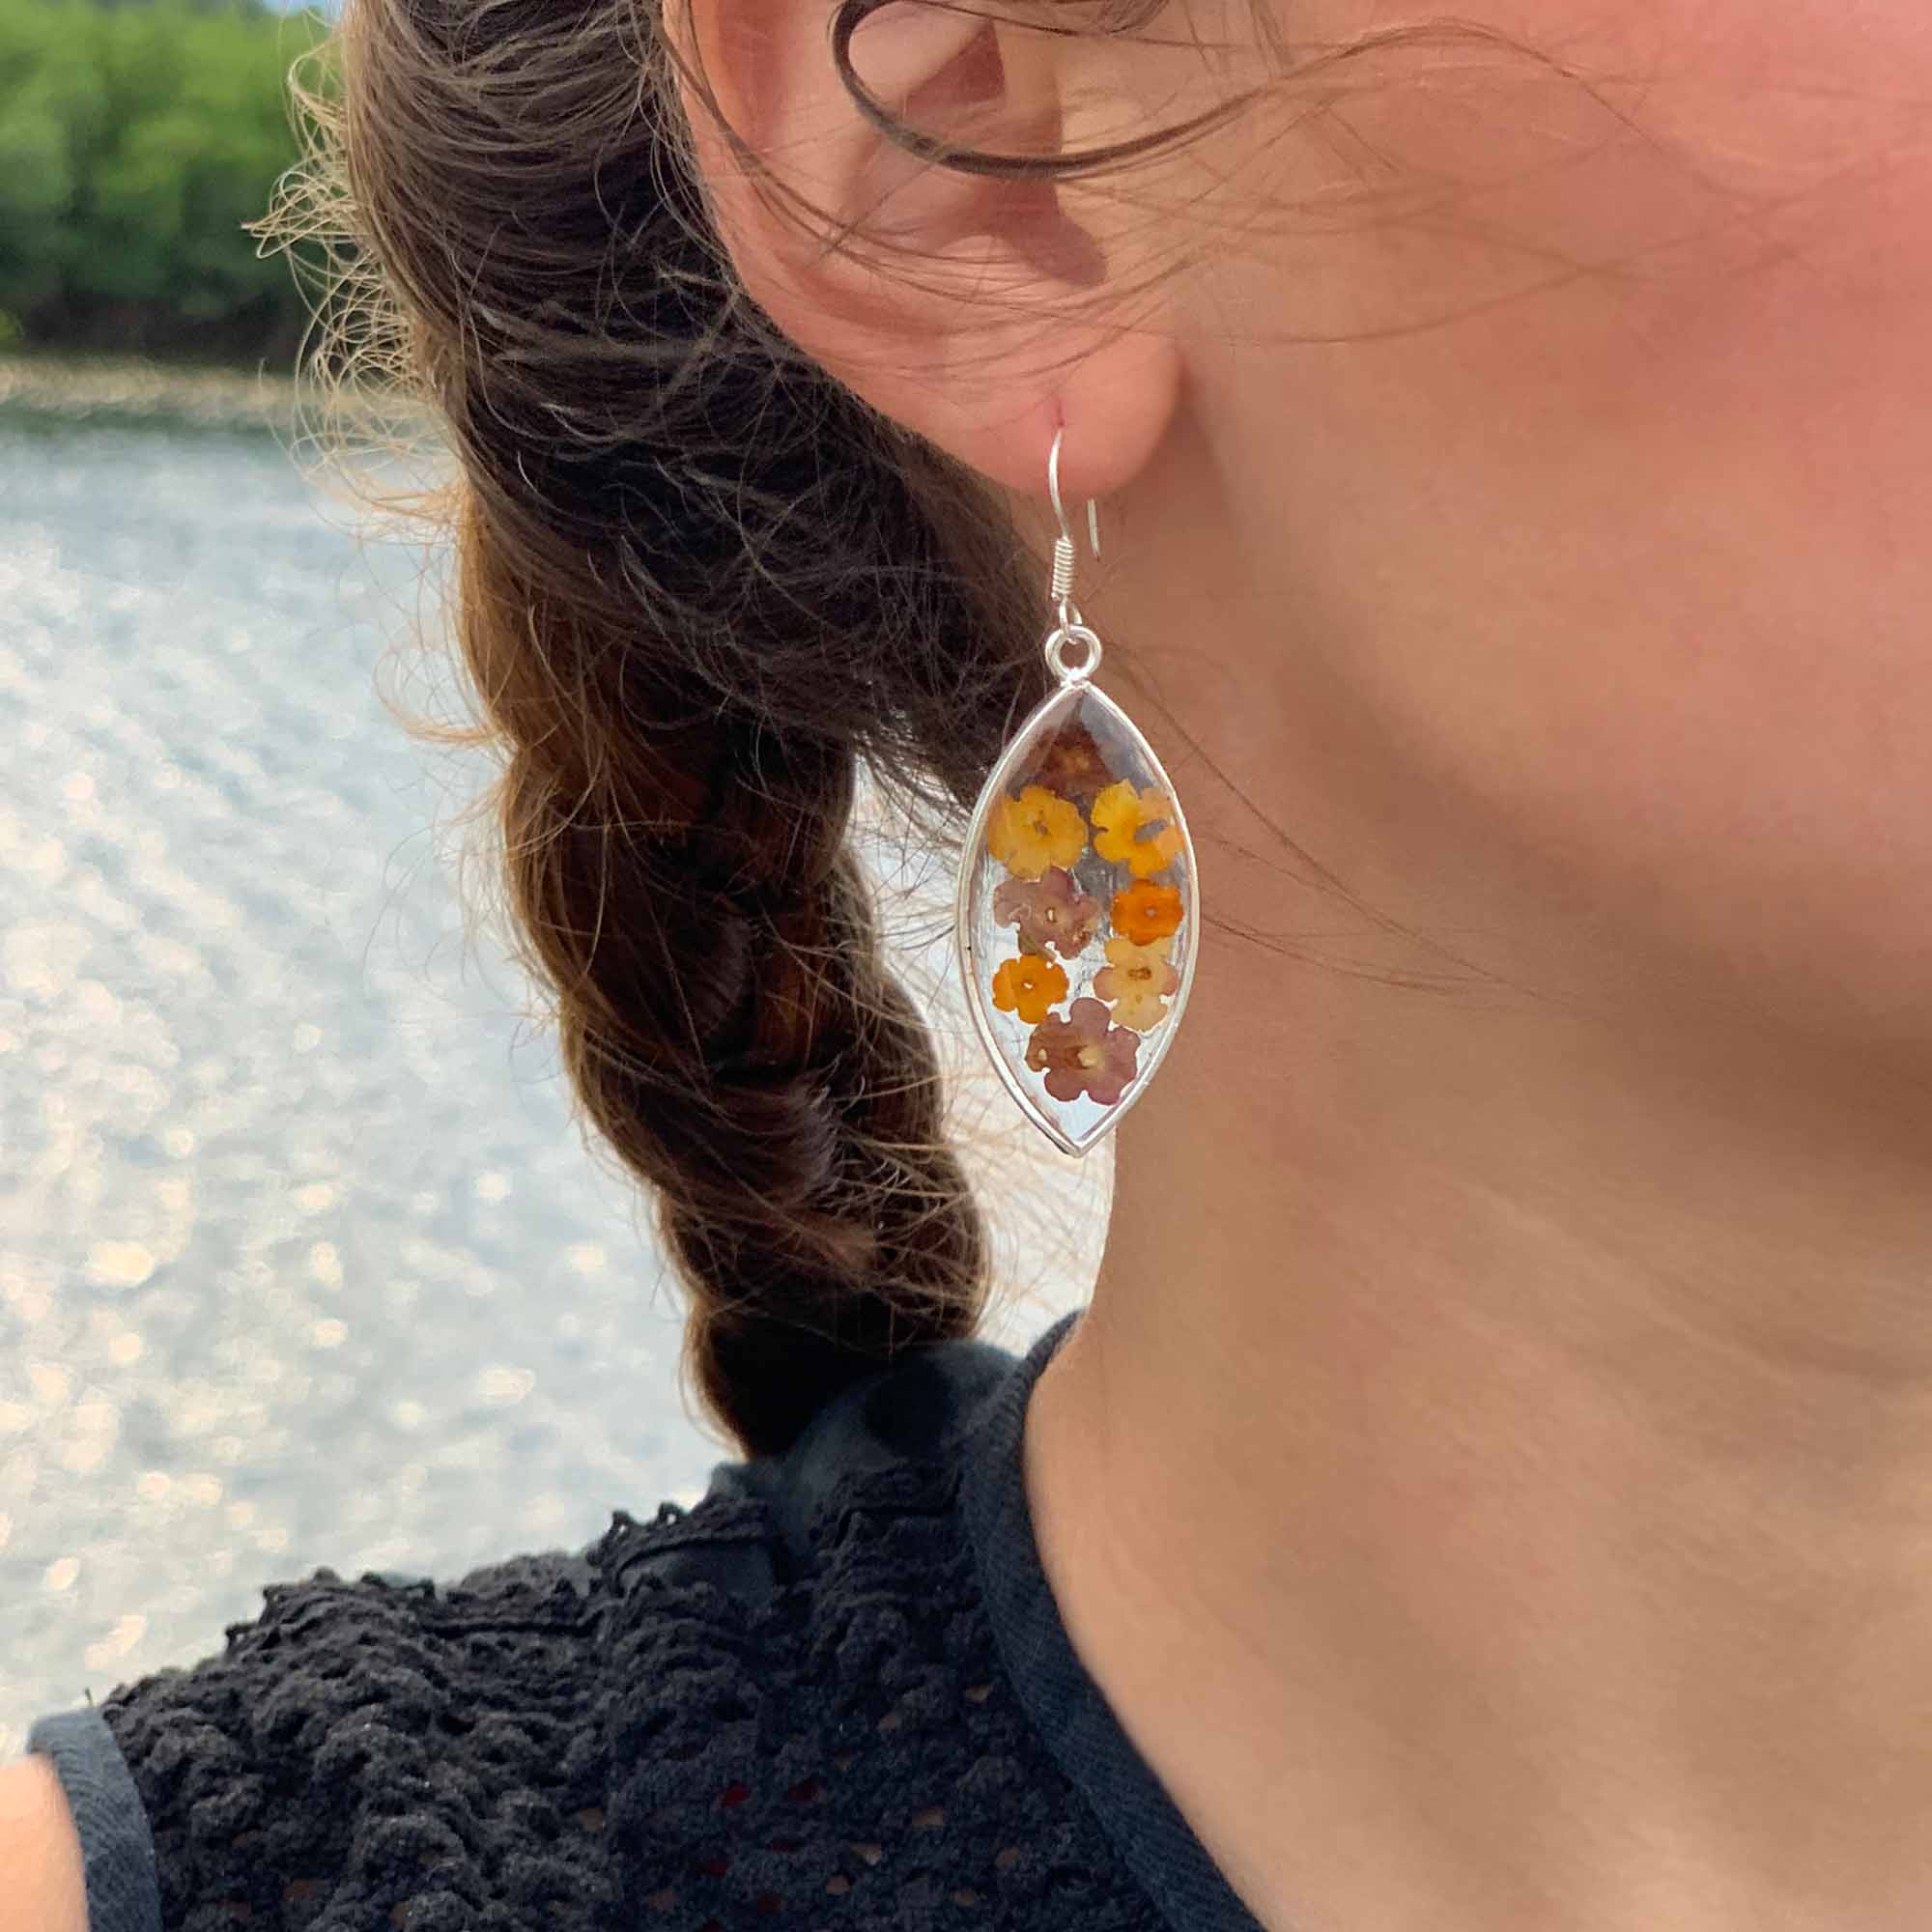 Angelco Accessories Pressed flower earrings